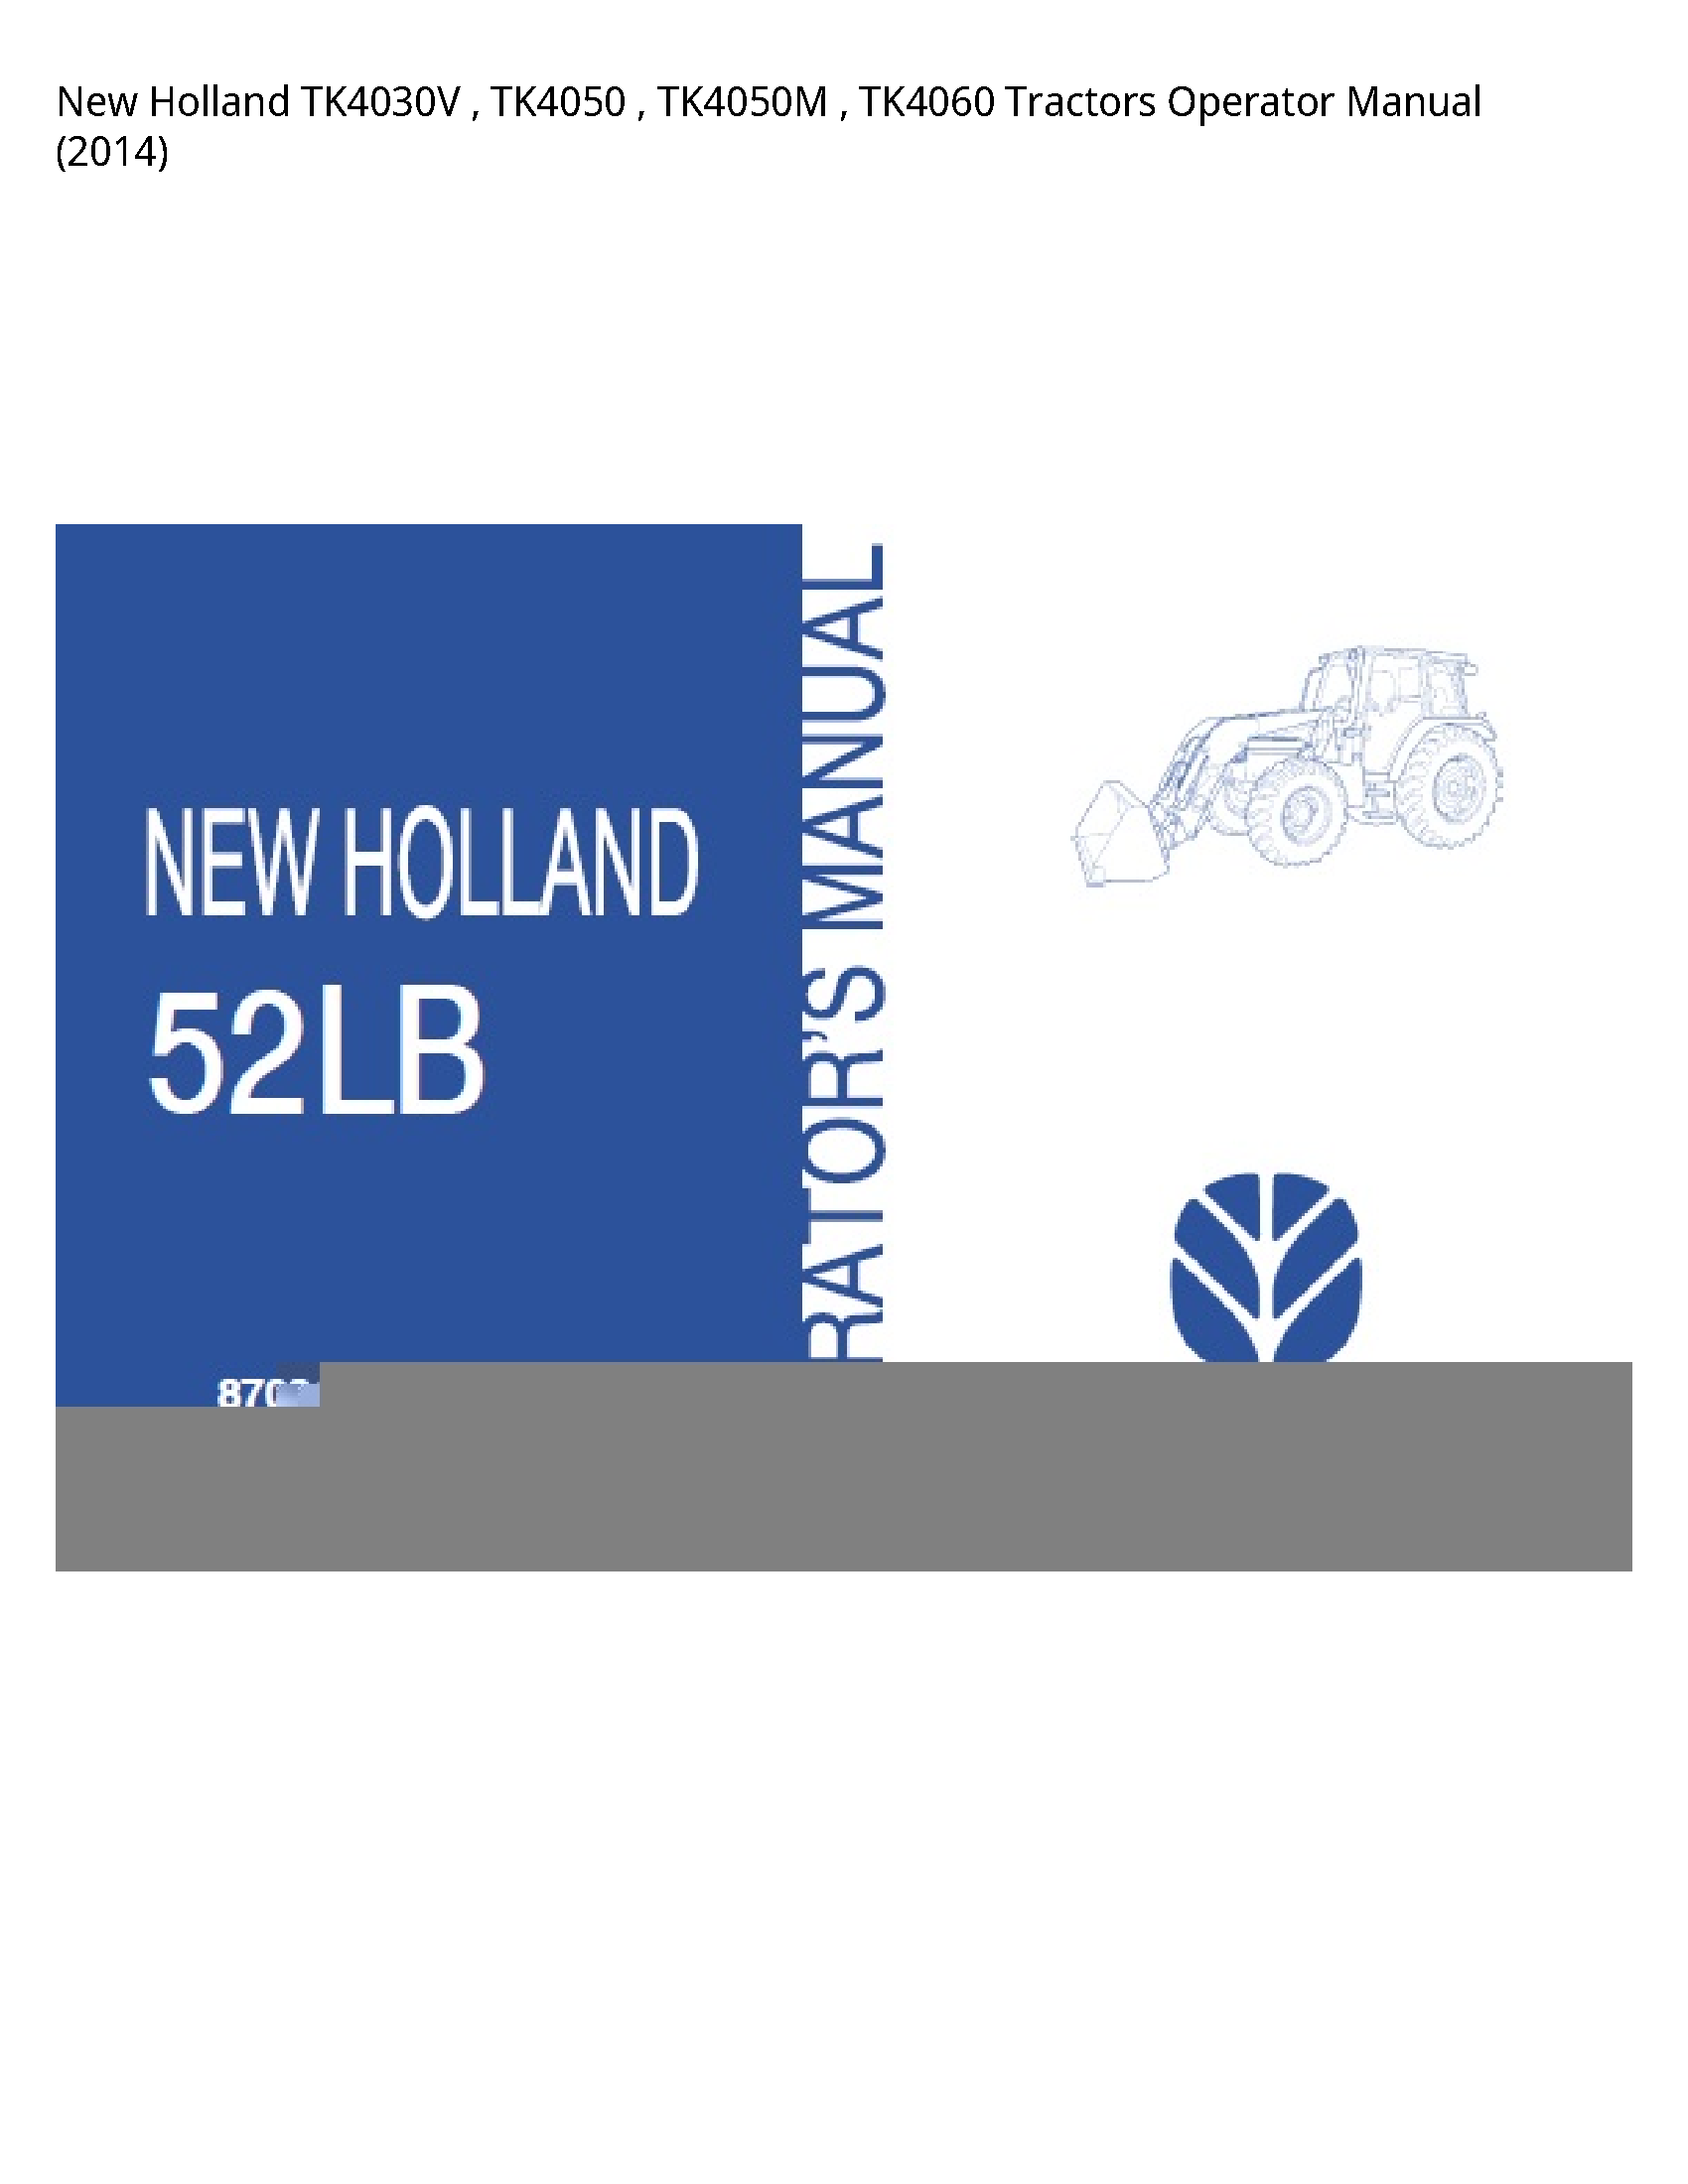 New Holland TK4030V Tractors Operator manual